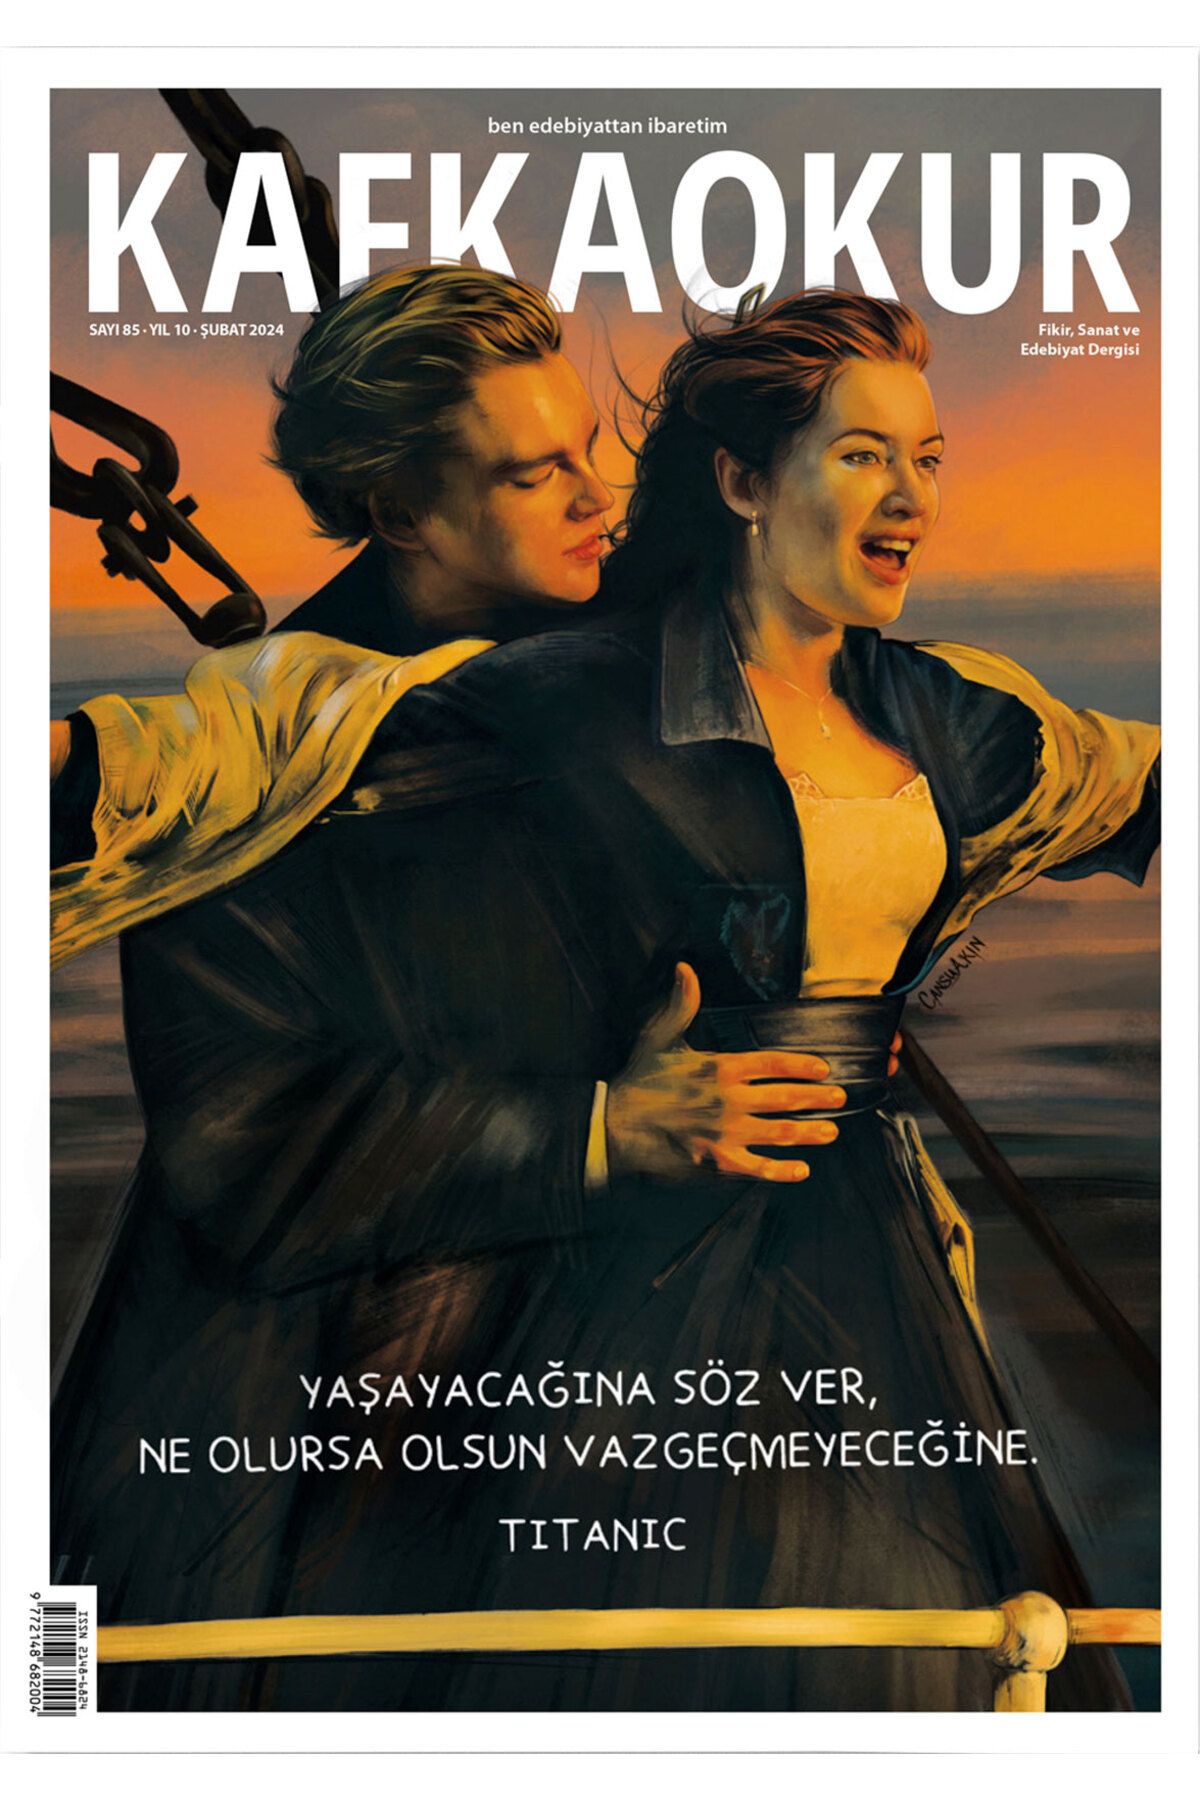 KafkaOkur Dergisi Sayı 85 - Titanic / James Cameron - Şubat 2024